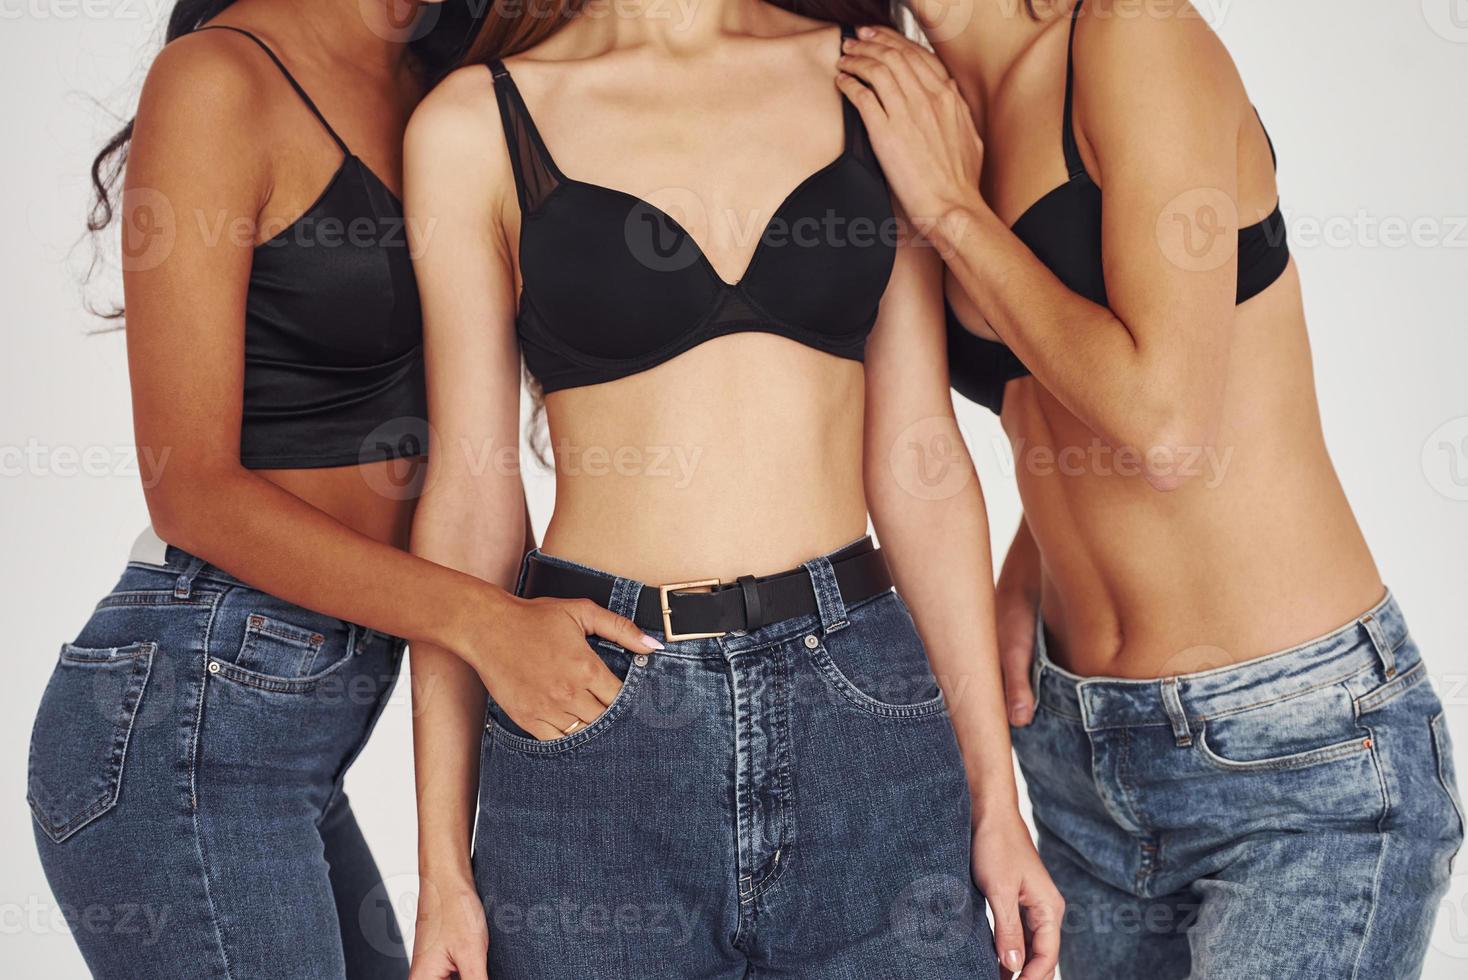 cuerpos sexys tres mujeres jóvenes en ropa interior juntas en el interior.  Fondo blanco 15171563 Foto de stock en Vecteezy